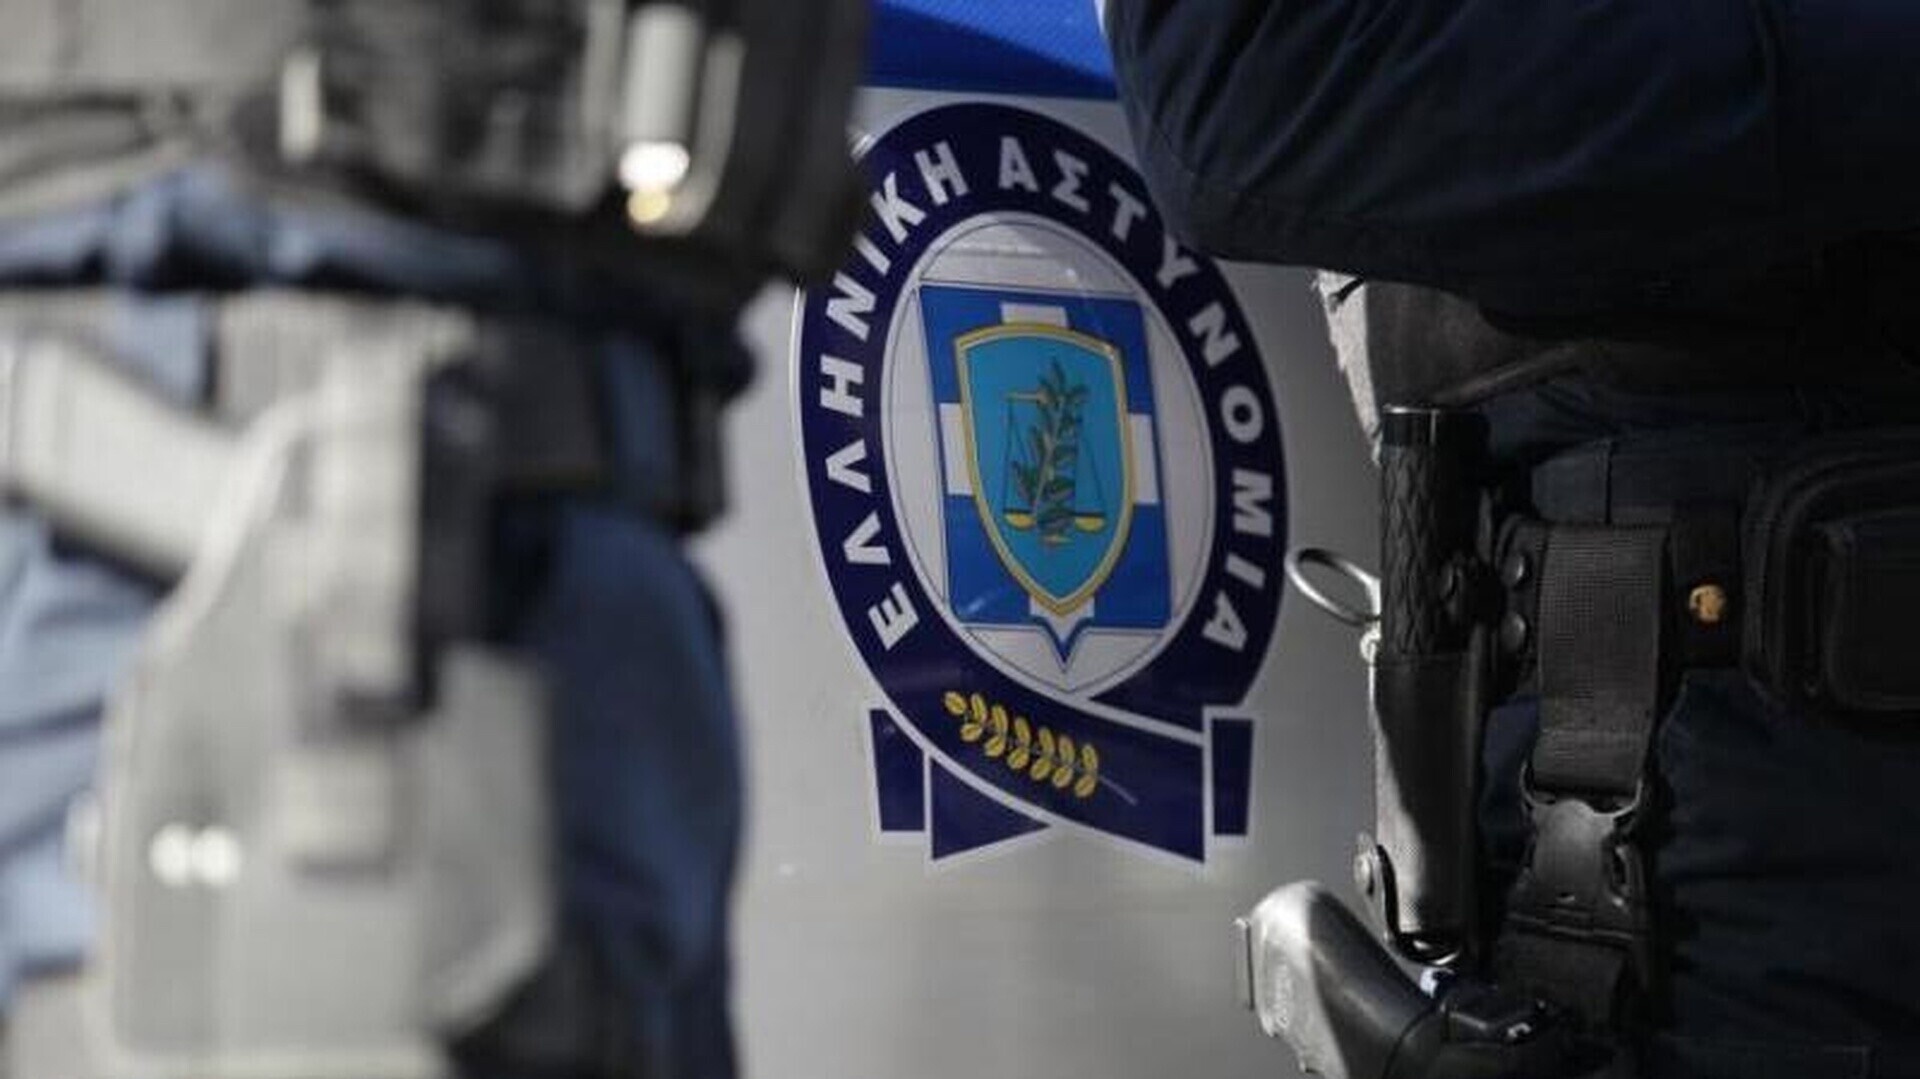 Θεσσαλονίκη: Προσπάθησαν να διαρρήξουν φορτηγάκι - Τους συνέλαβε αστυνομικός εκτός υπηρεσίας